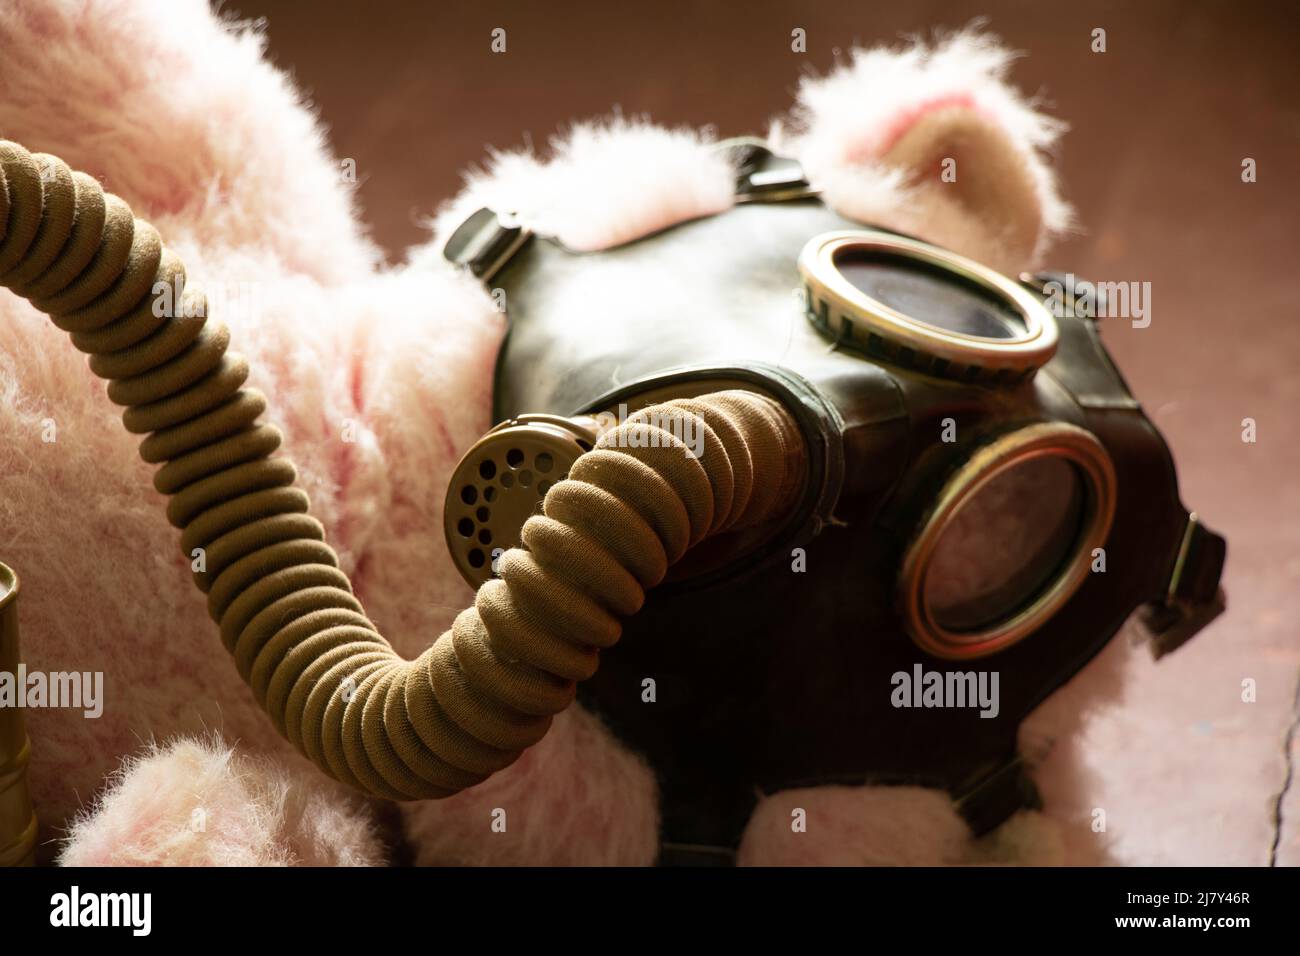 Guerra chimica immagini e fotografie stock ad alta risoluzione - Alamy